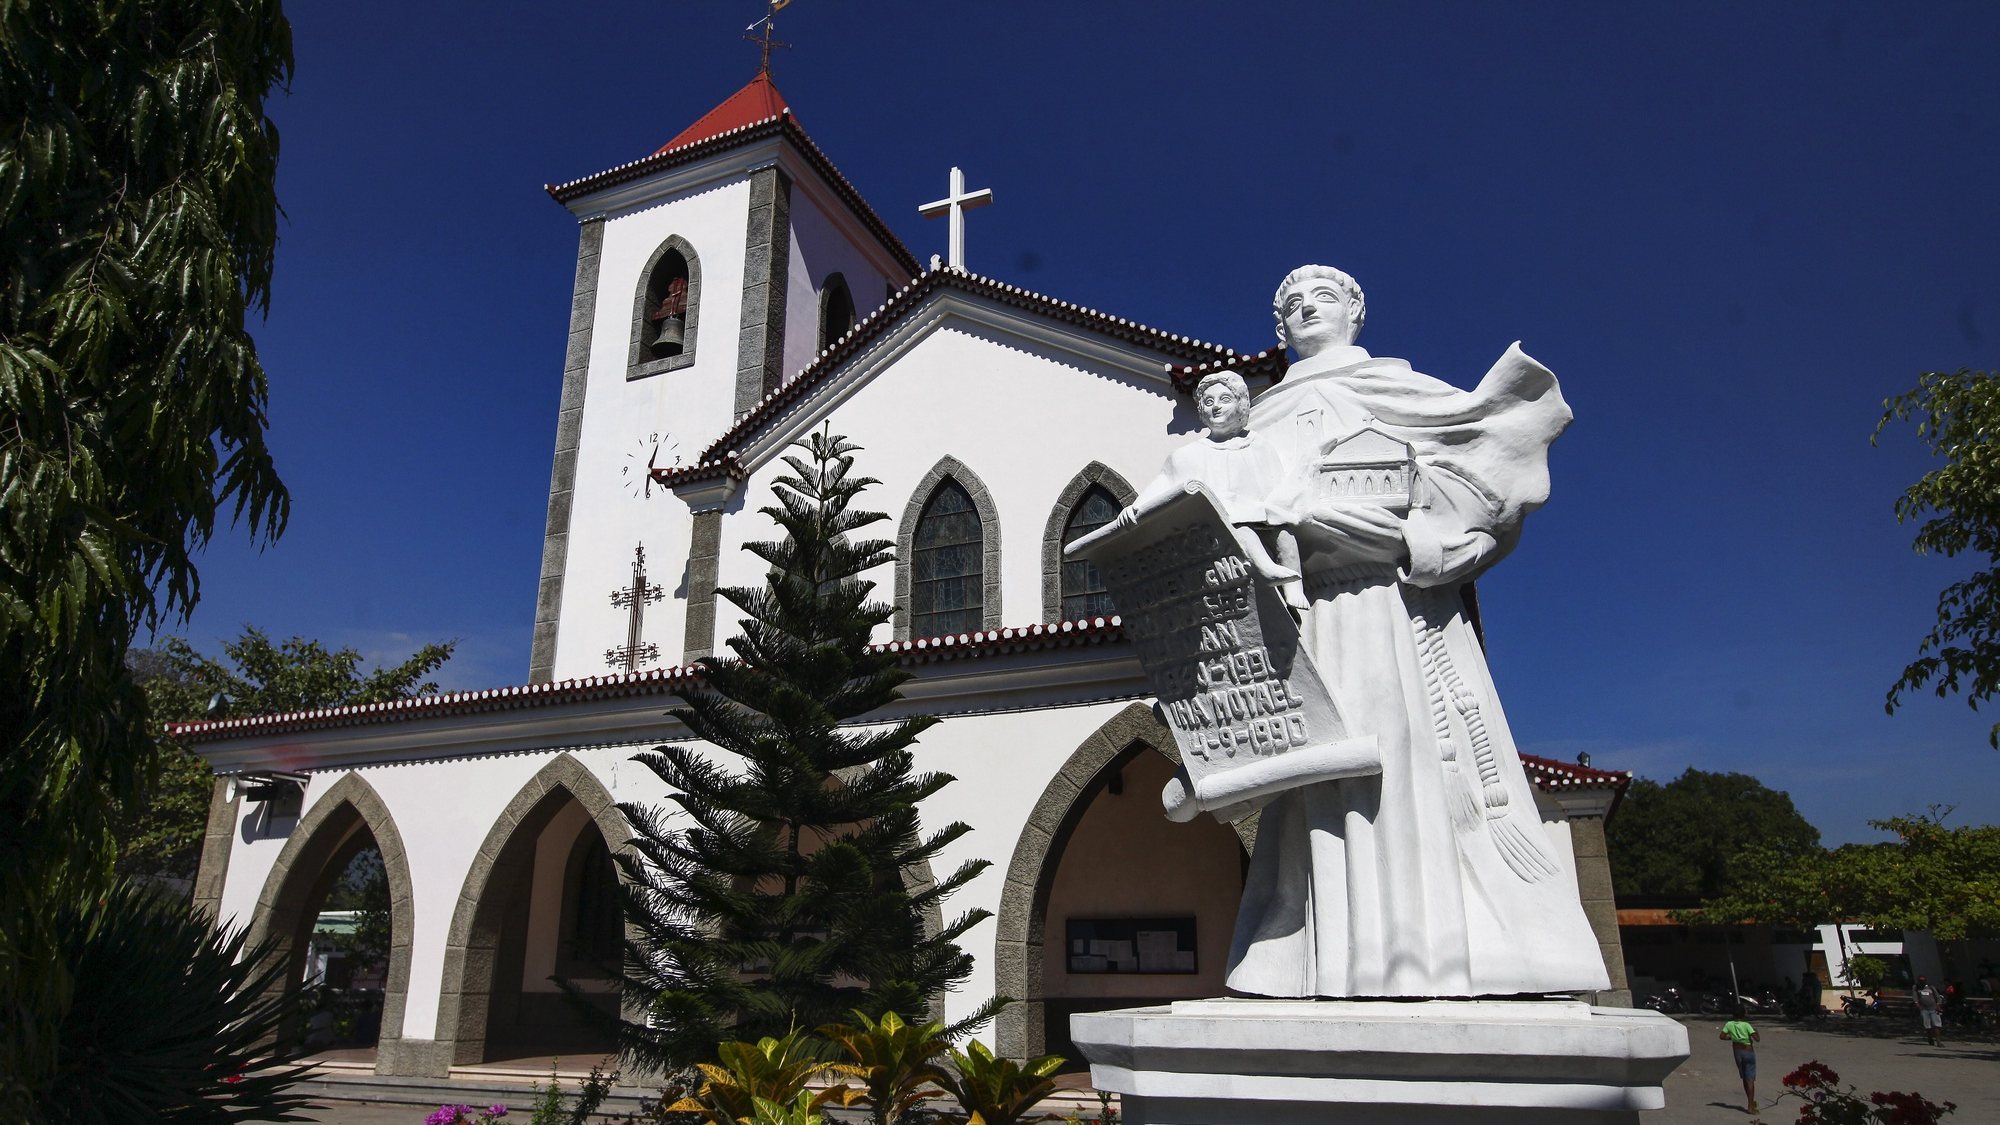 Igreja da paróquia de Santo António Motael, diocese de Díli, Timor-Leste, 20 de julho de 2017. NUNO VEIGA/LUSA